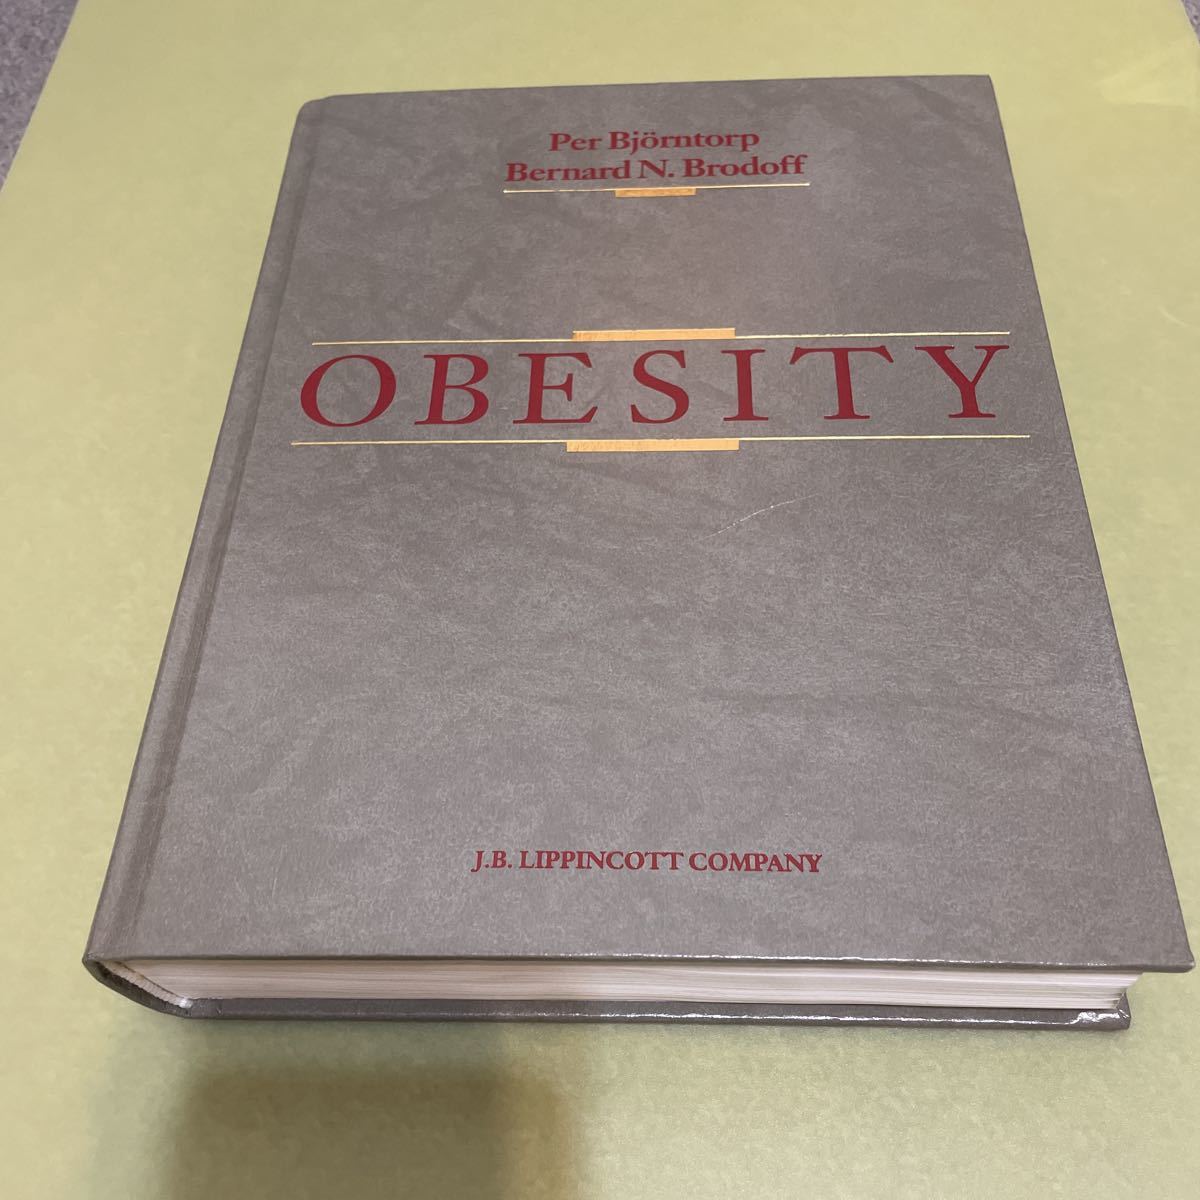 ◎肥満の英語本 Obesity 英語版 Per Bjorntorp Bernard N. Brodoff-